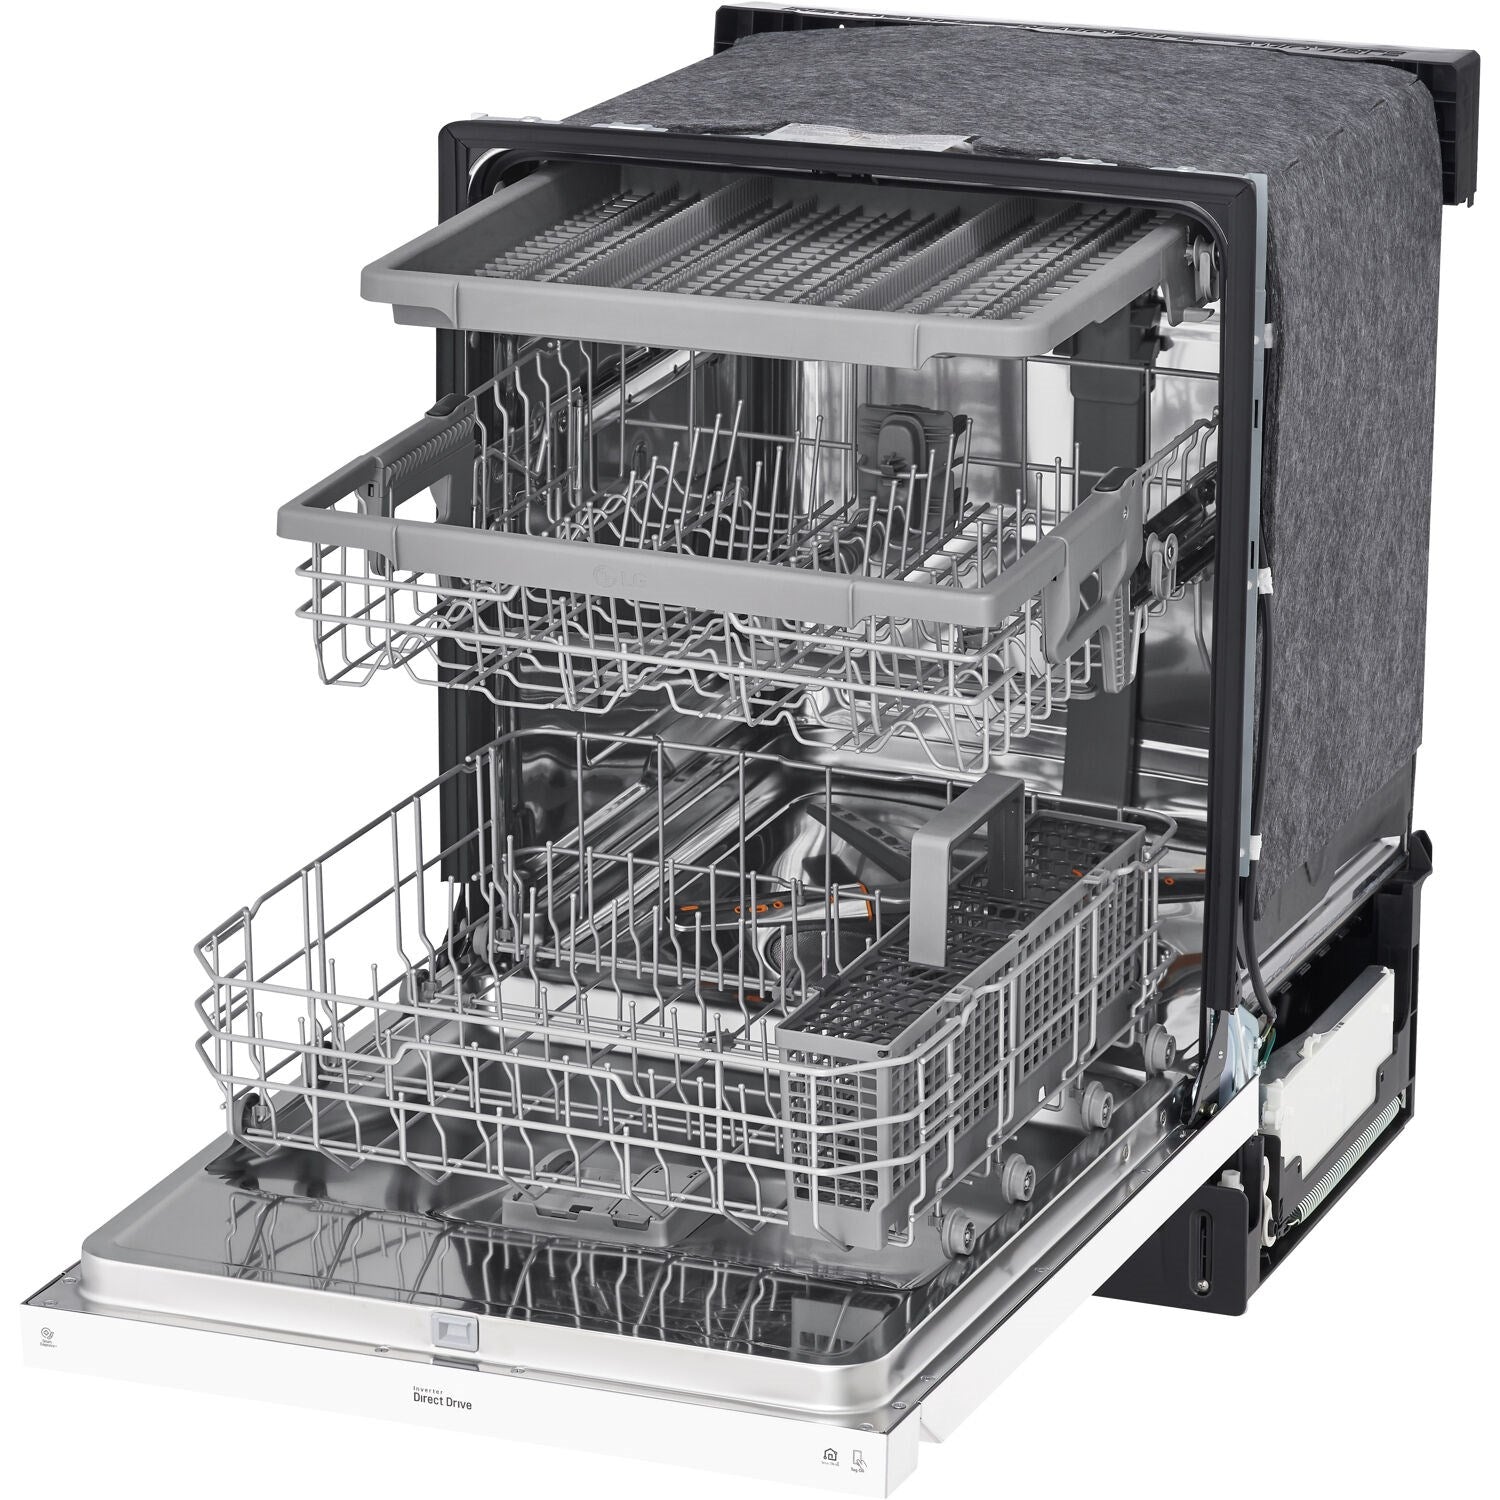 LG Semi Integrated Built In Dishwashers LDFN4542W